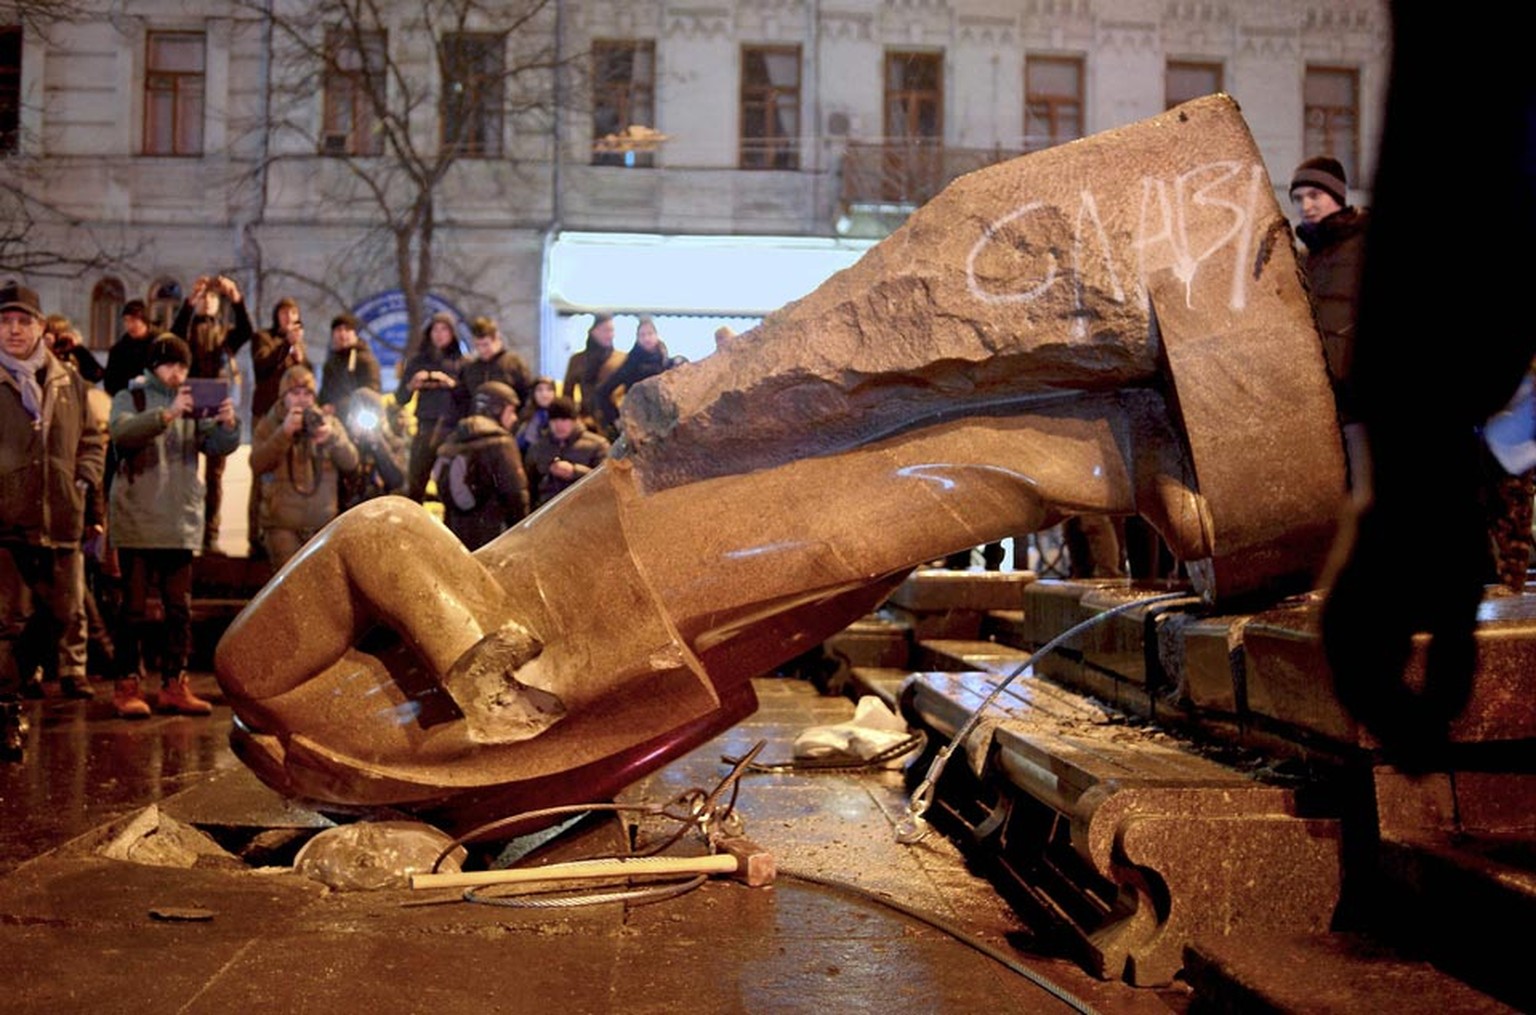 Schon am 8. Dezember musste die Statue in Kiew dran glauben: Demonstranten holten den überlebensgrossen Lenin vom Podest.&nbsp;